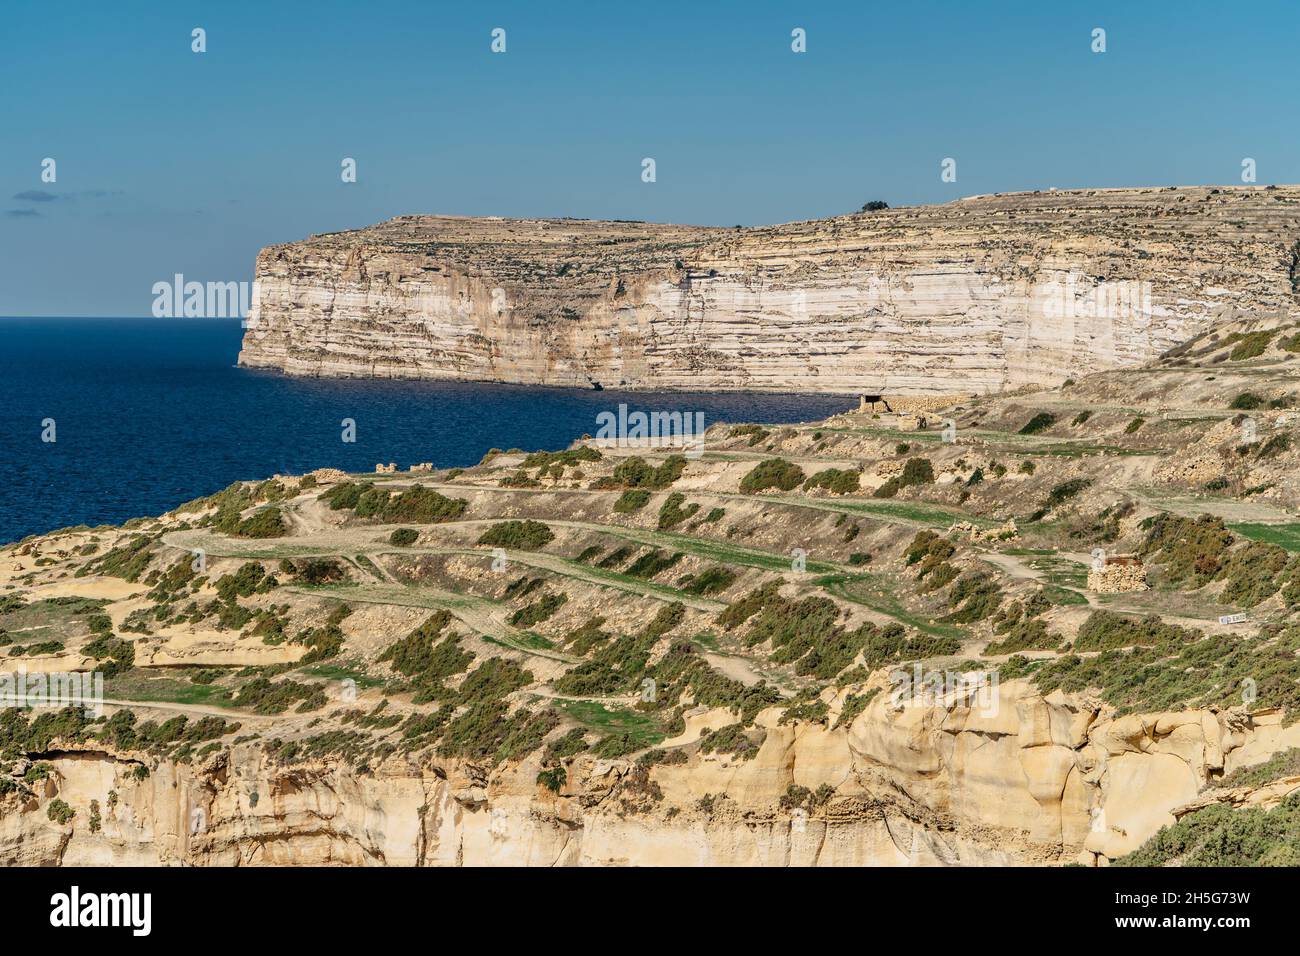 Côte calcaire rocheuse de l'île de Gozo et de la mer Méditerranée avec eau bleu turquoise et grottes.champs en terrasses vertes, collines.populaire falaises de marche Banque D'Images